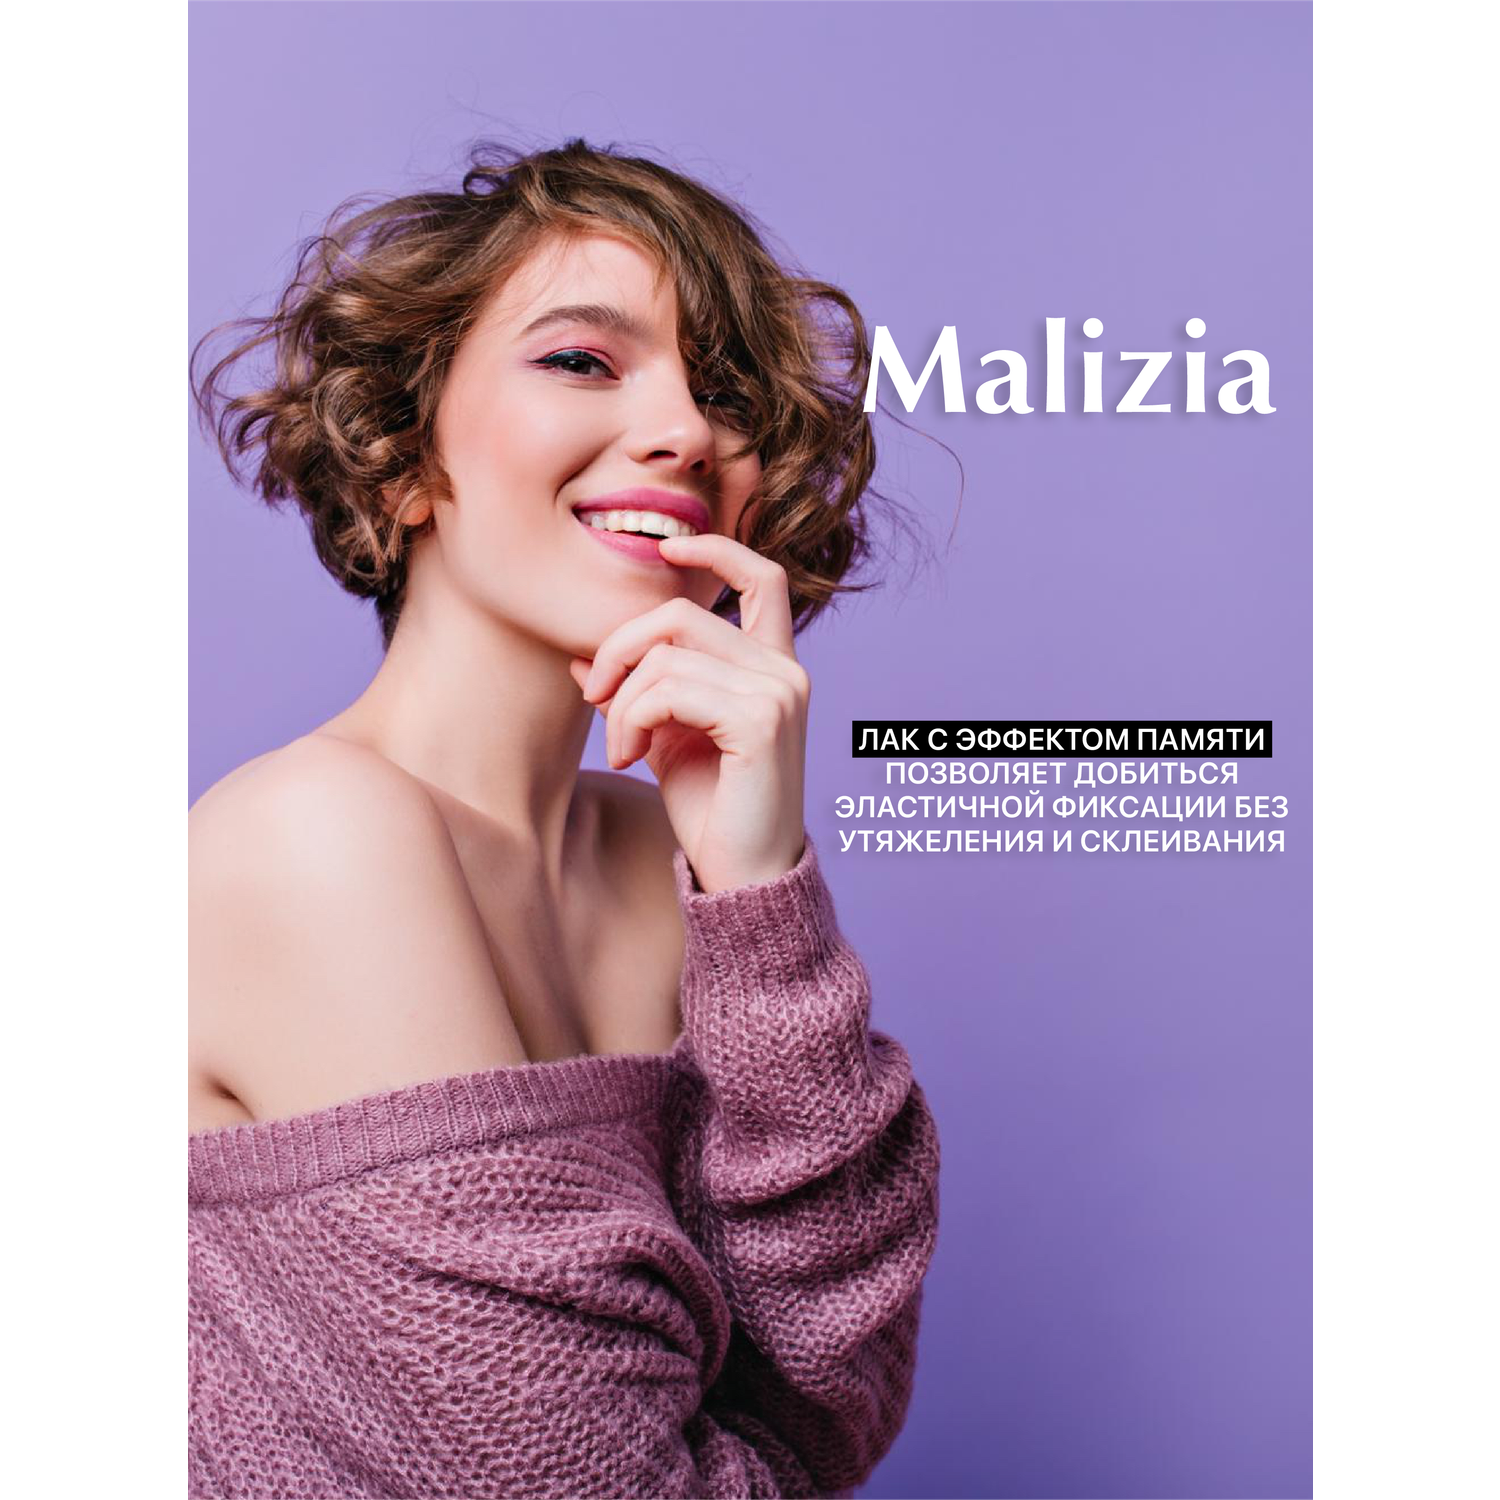 Лак для волос Malizia сильной фиксации с провитамином В5 75 мл - фото 4